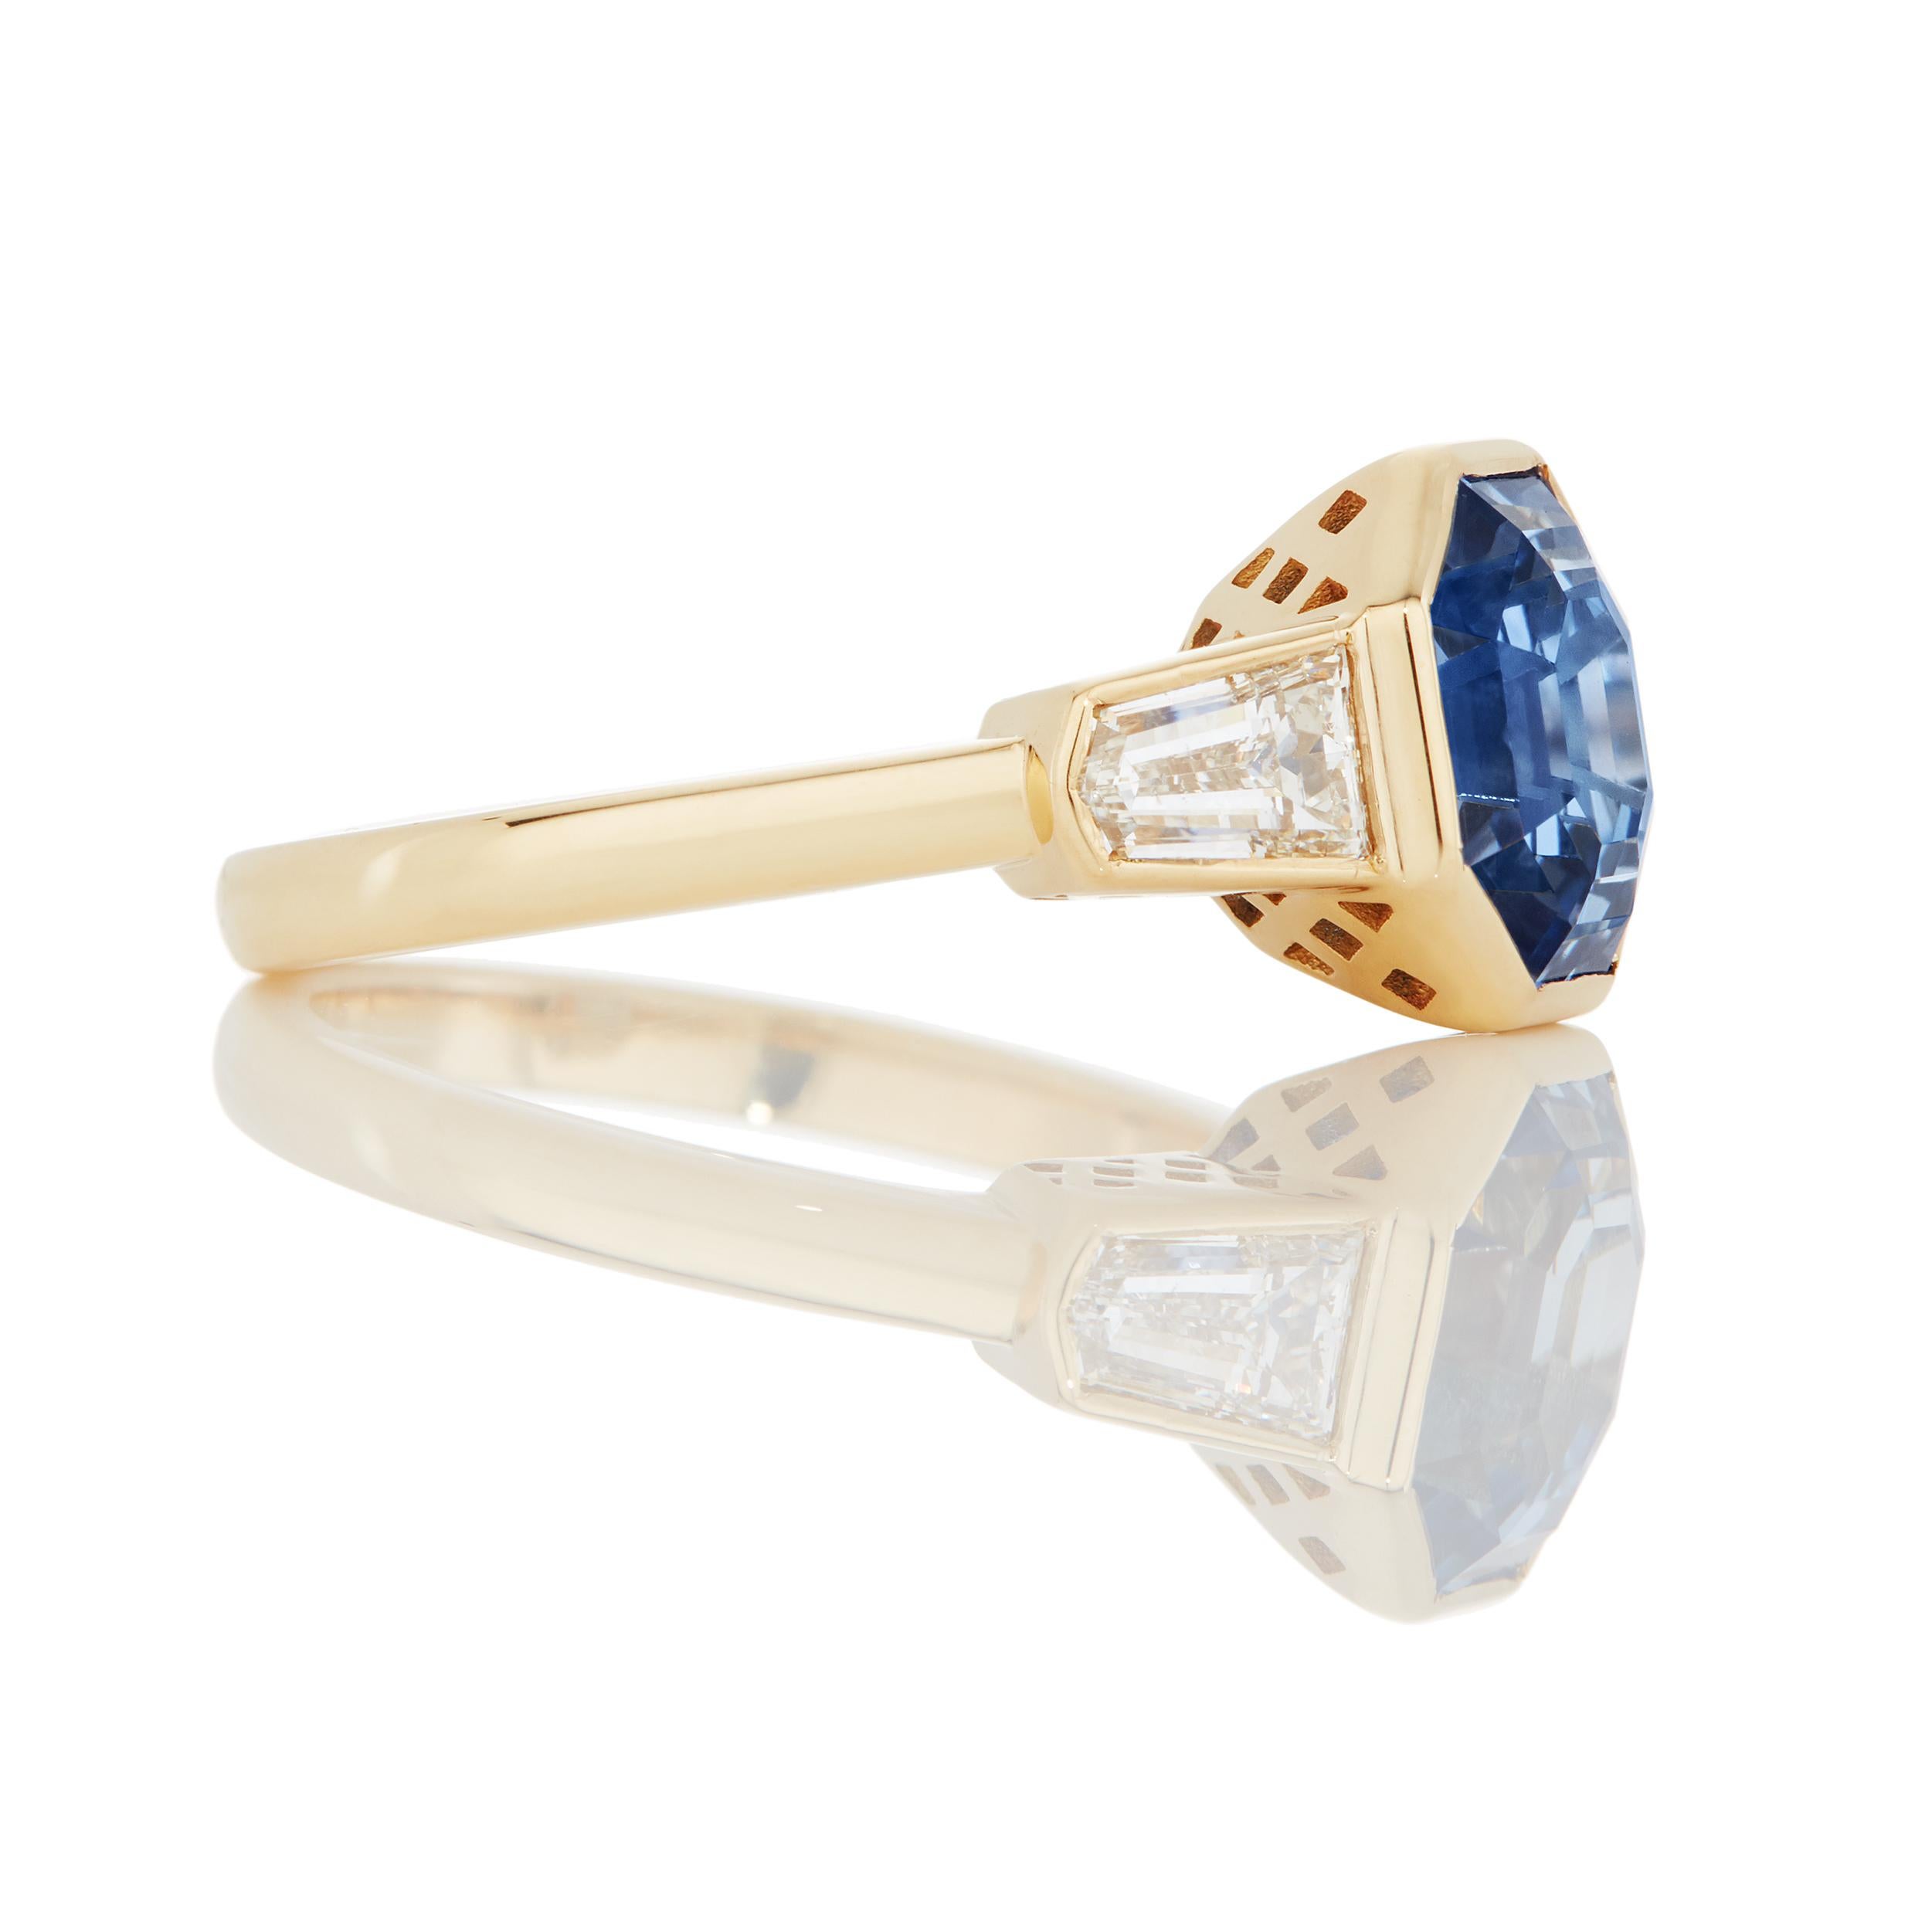 Description générale :

Détails de l'anneau
Rapport AGL n° 1102400

     Saphir bleu de forme octogonale pesant ...
Diamants profilés à taille en escalier pesant 0.14 carats

Poids total des pierres précieuses : 4,21

Taille de l'anneau :